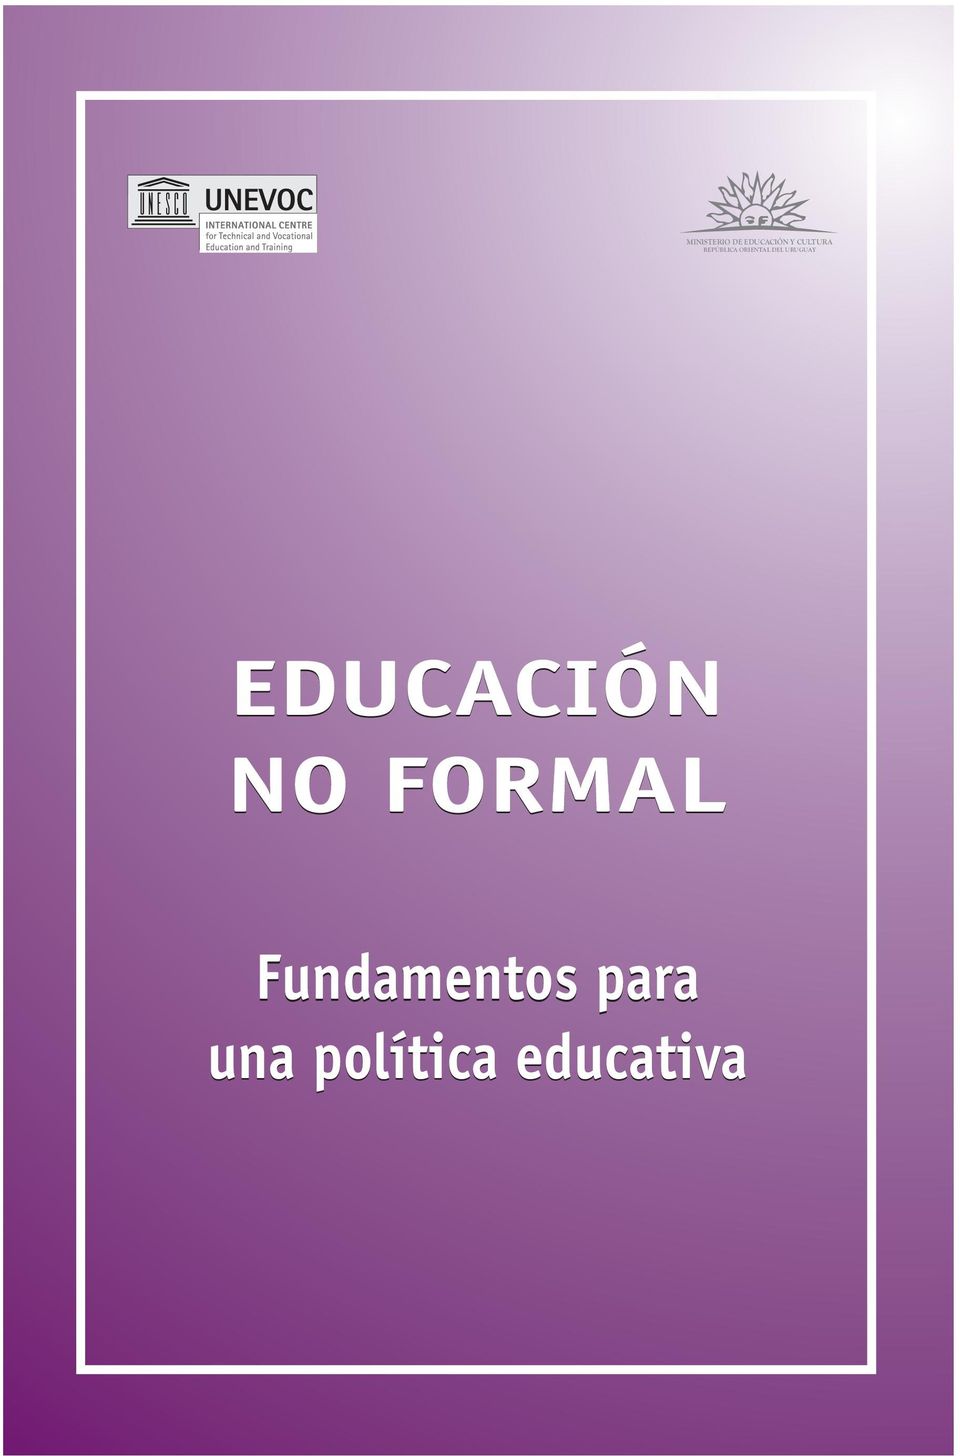 URUGUAY EDUCACIÓN NO FORMAL